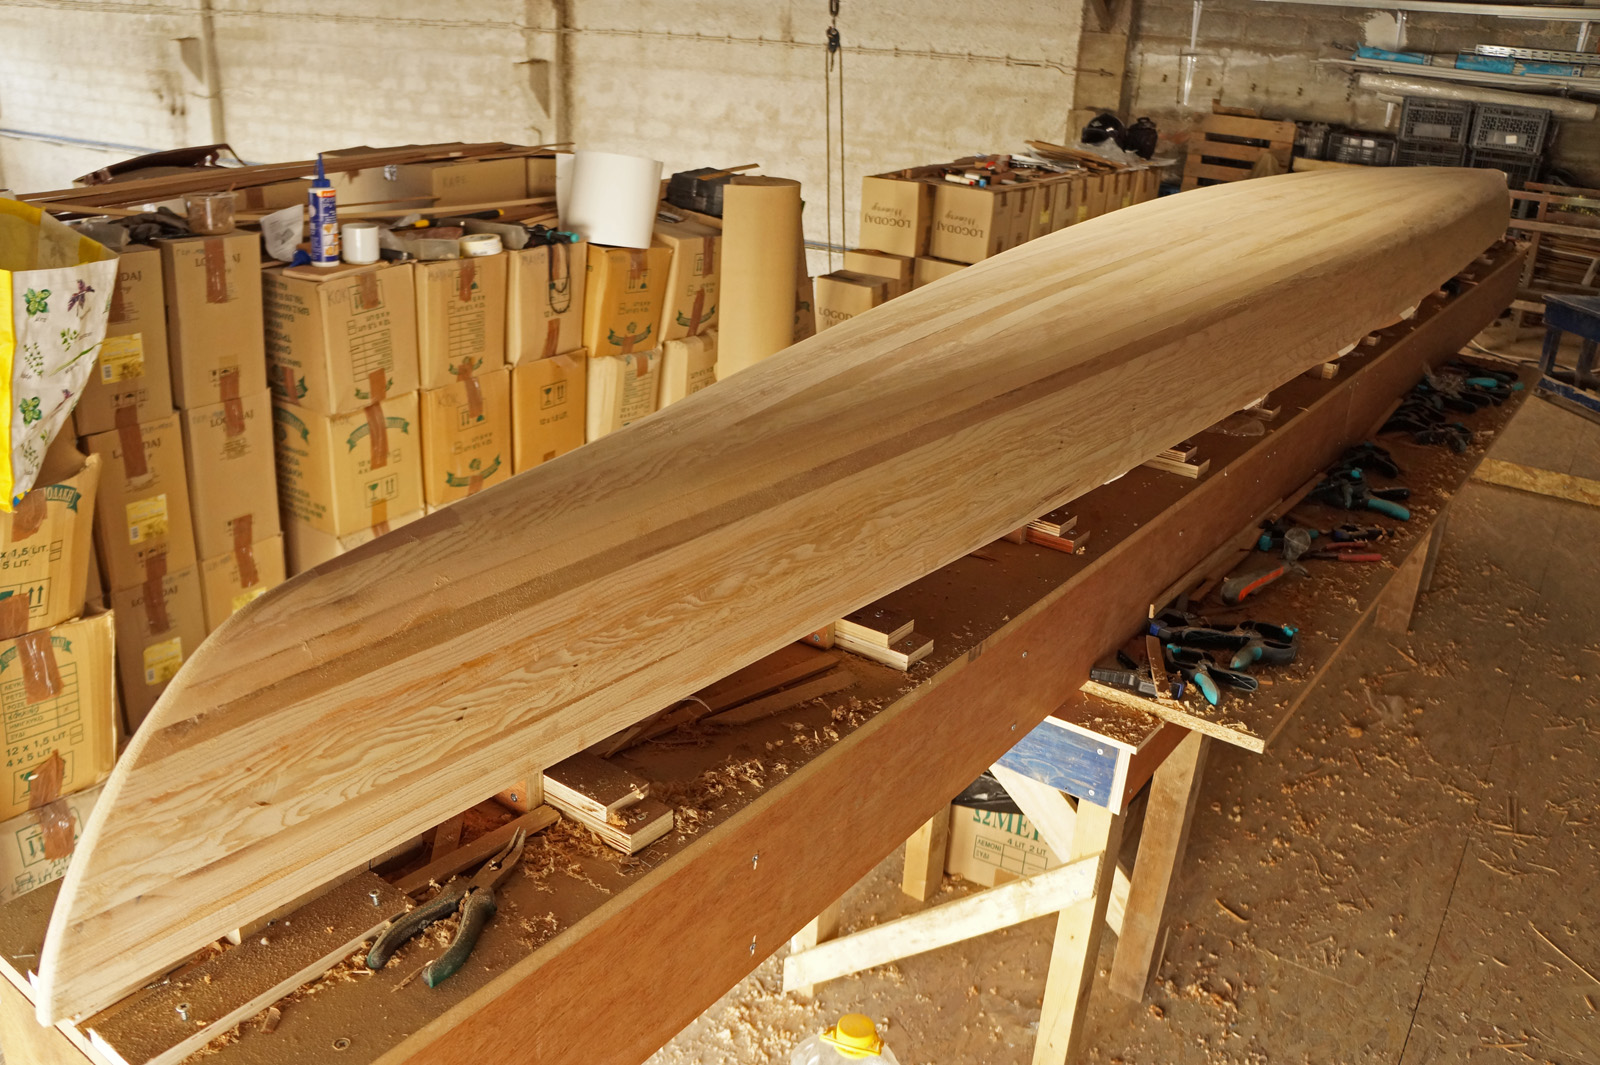 Strip build ξυλινο καγιακ κατασκευη στην Ελλαδα